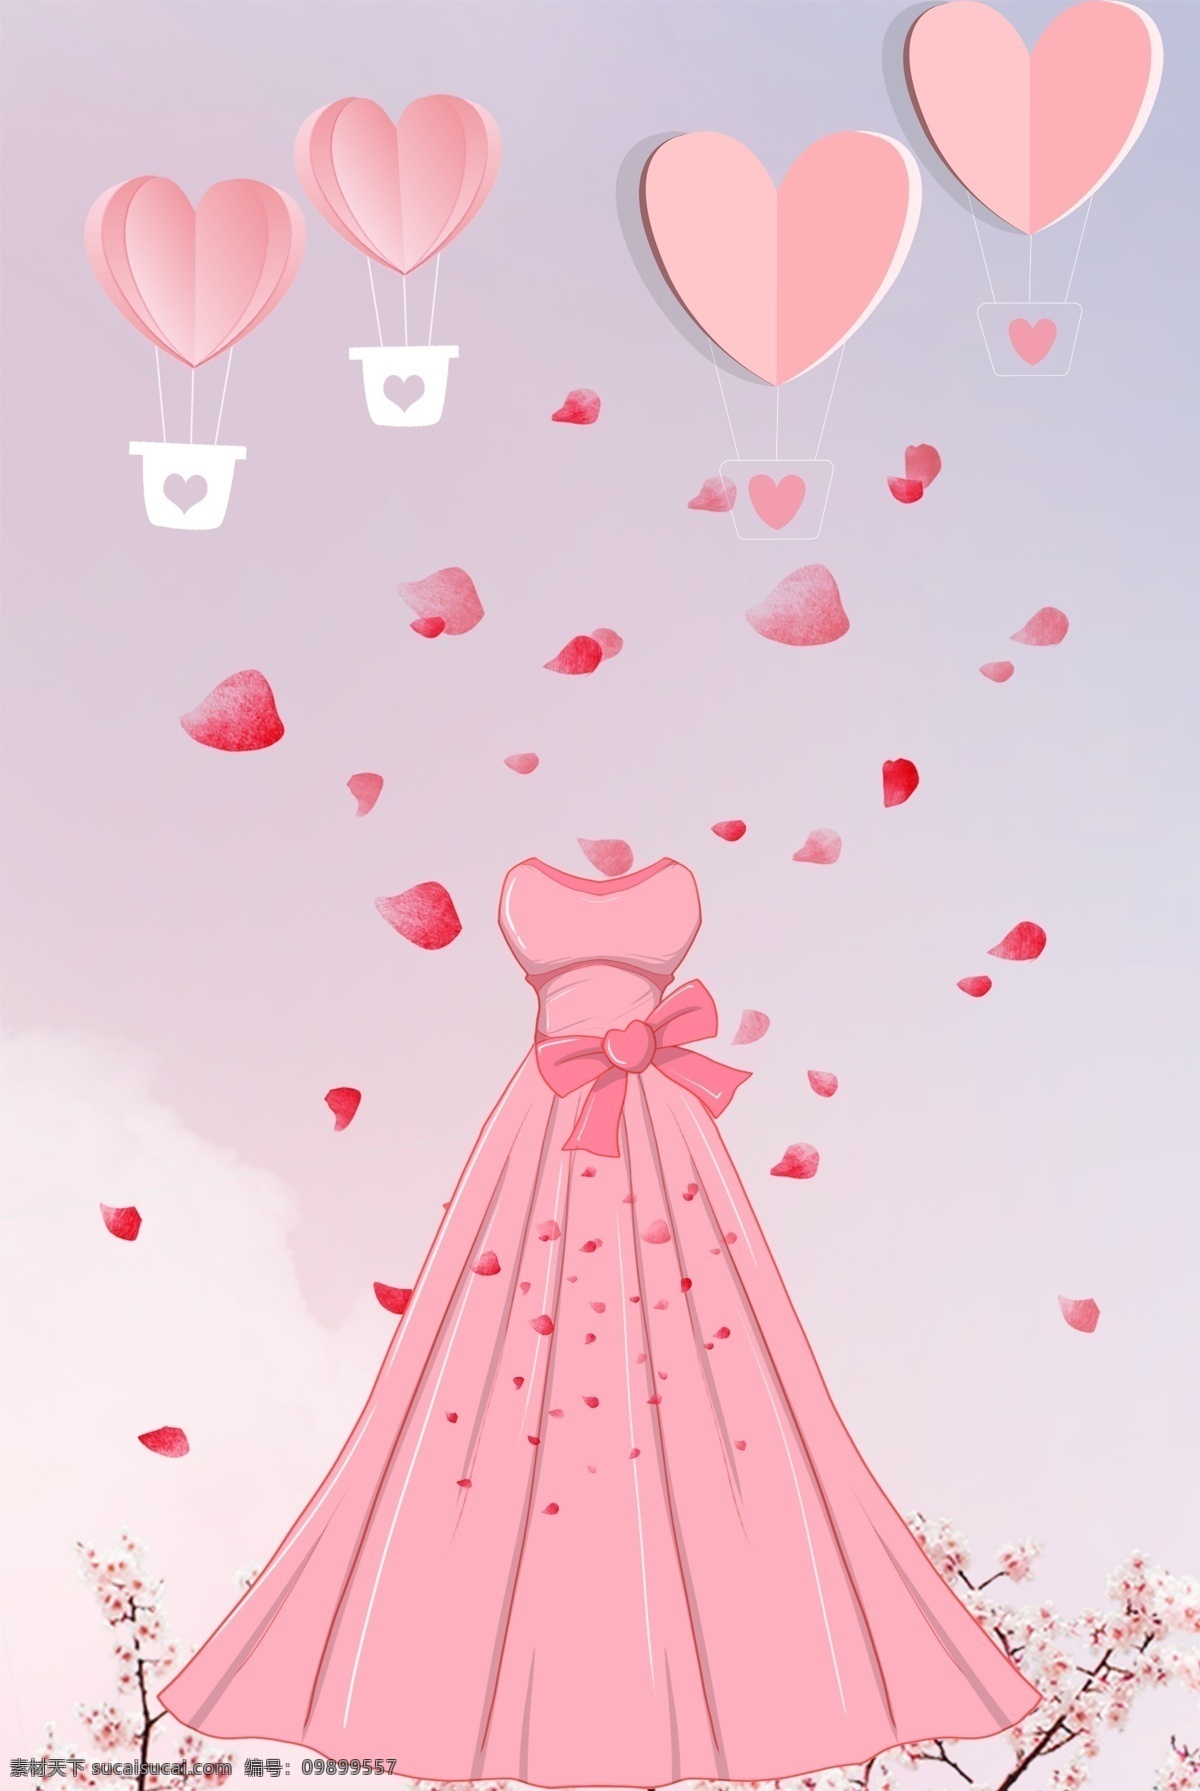 折纸 风格 婚 博 会 海报 背景 图 粉色系 婚博会 背景图 唯美 蓝色 天空 梦幻